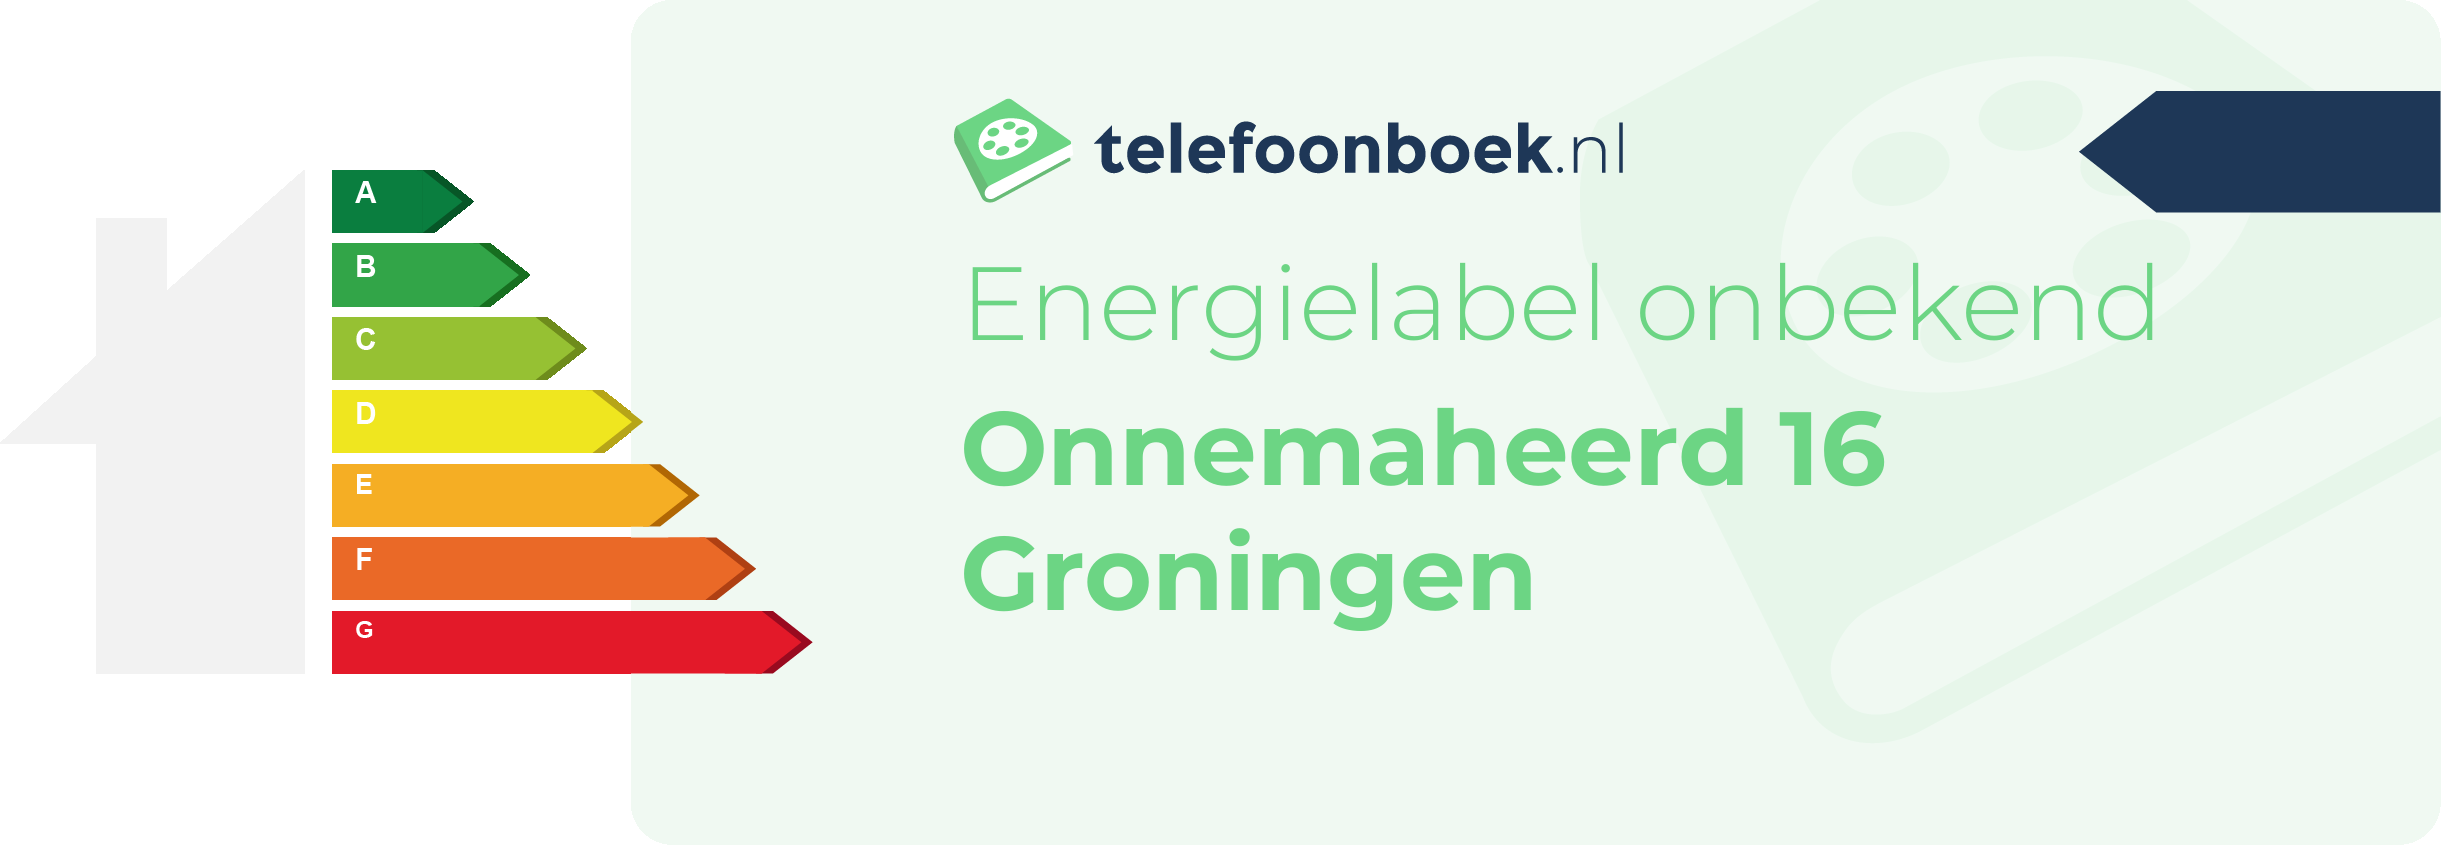 Energielabel Onnemaheerd 16 Groningen